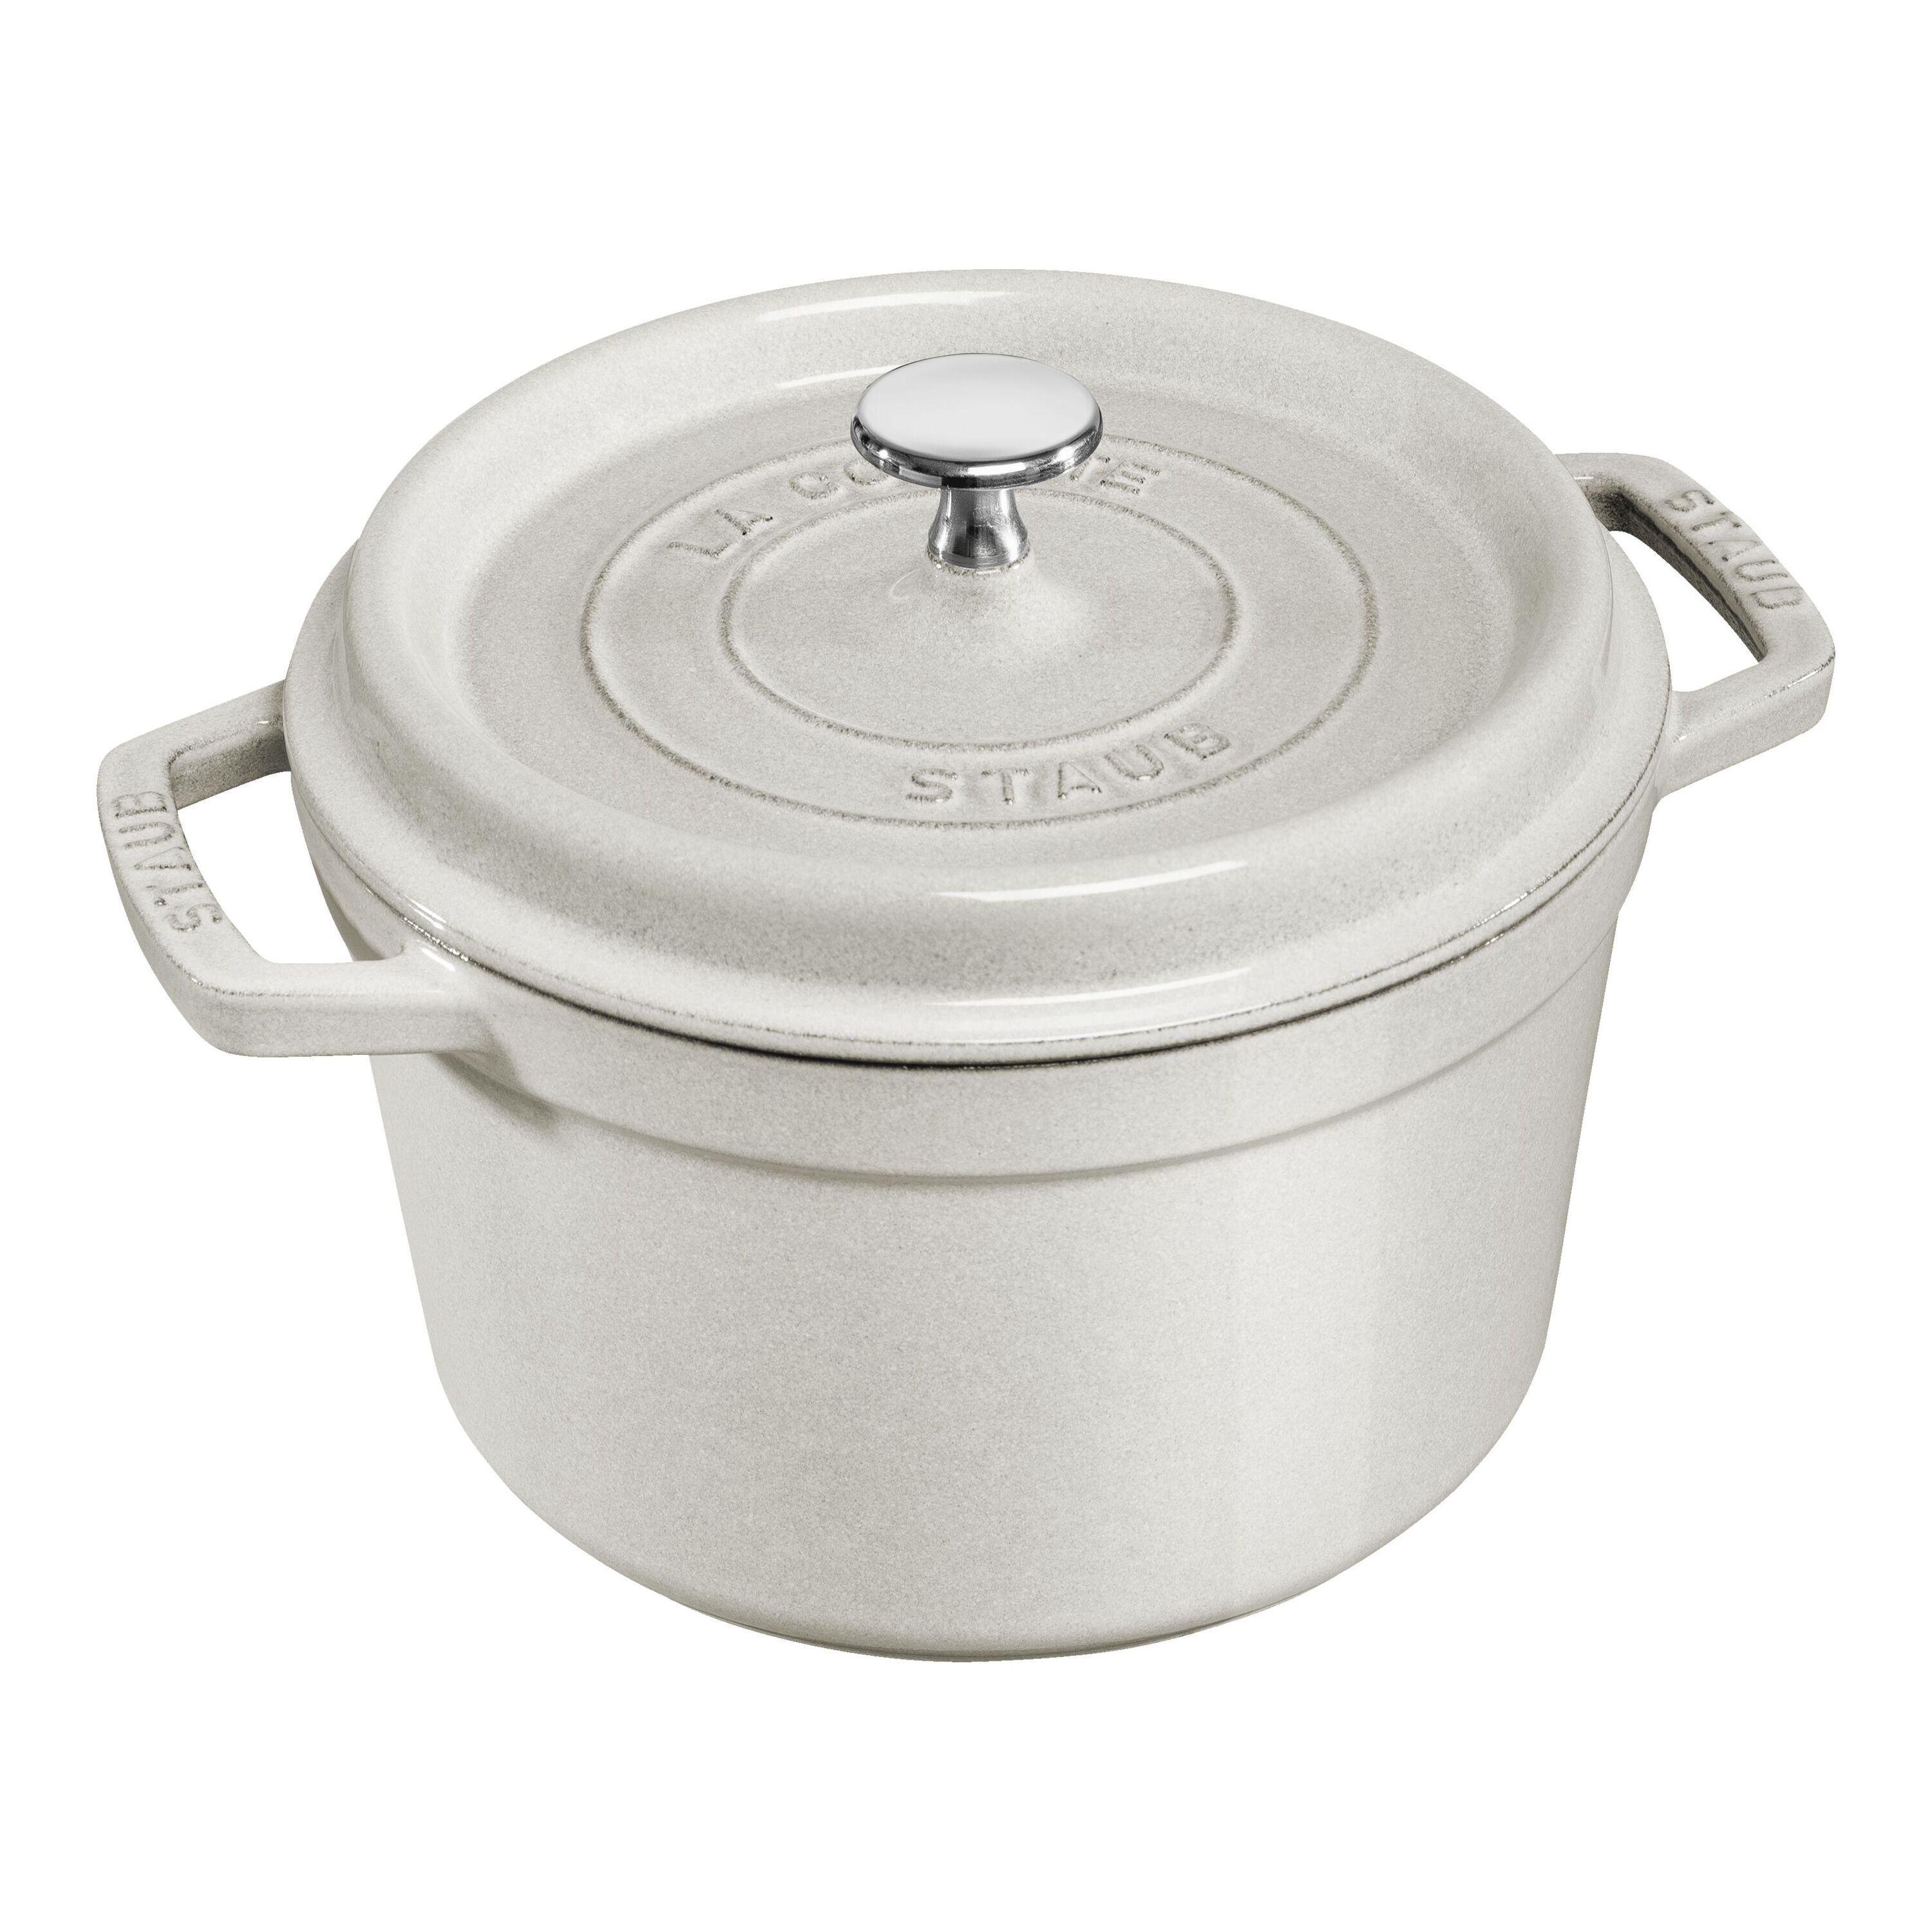 Staub Cocotte 2-piece cast iron pot and pan set 24 cm, white